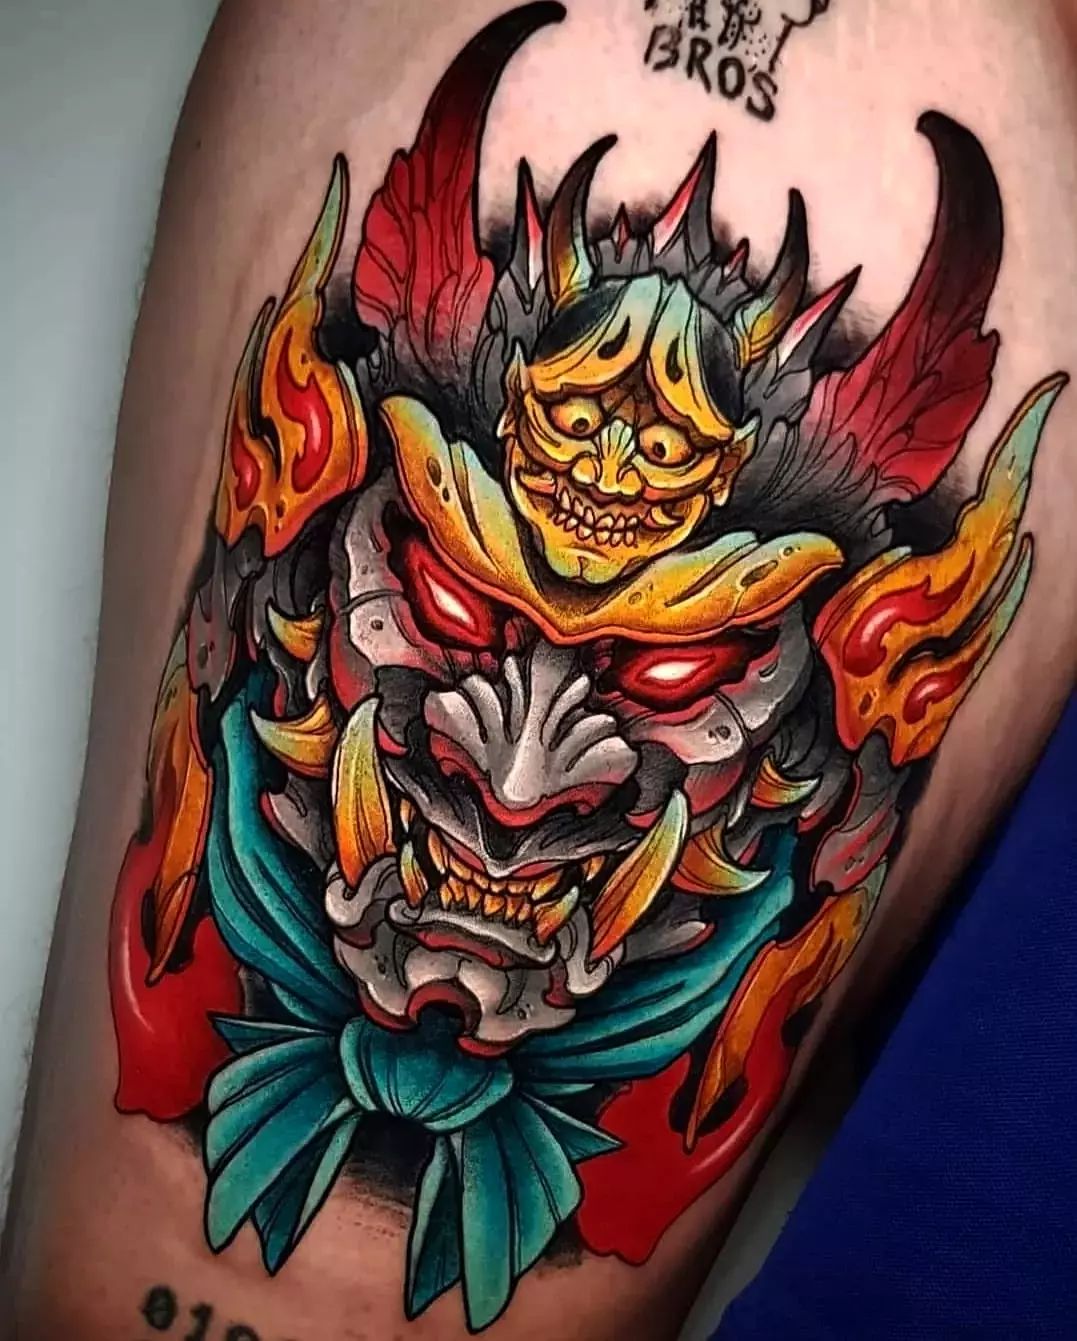 Colorful Samurai Tattoo on Leg